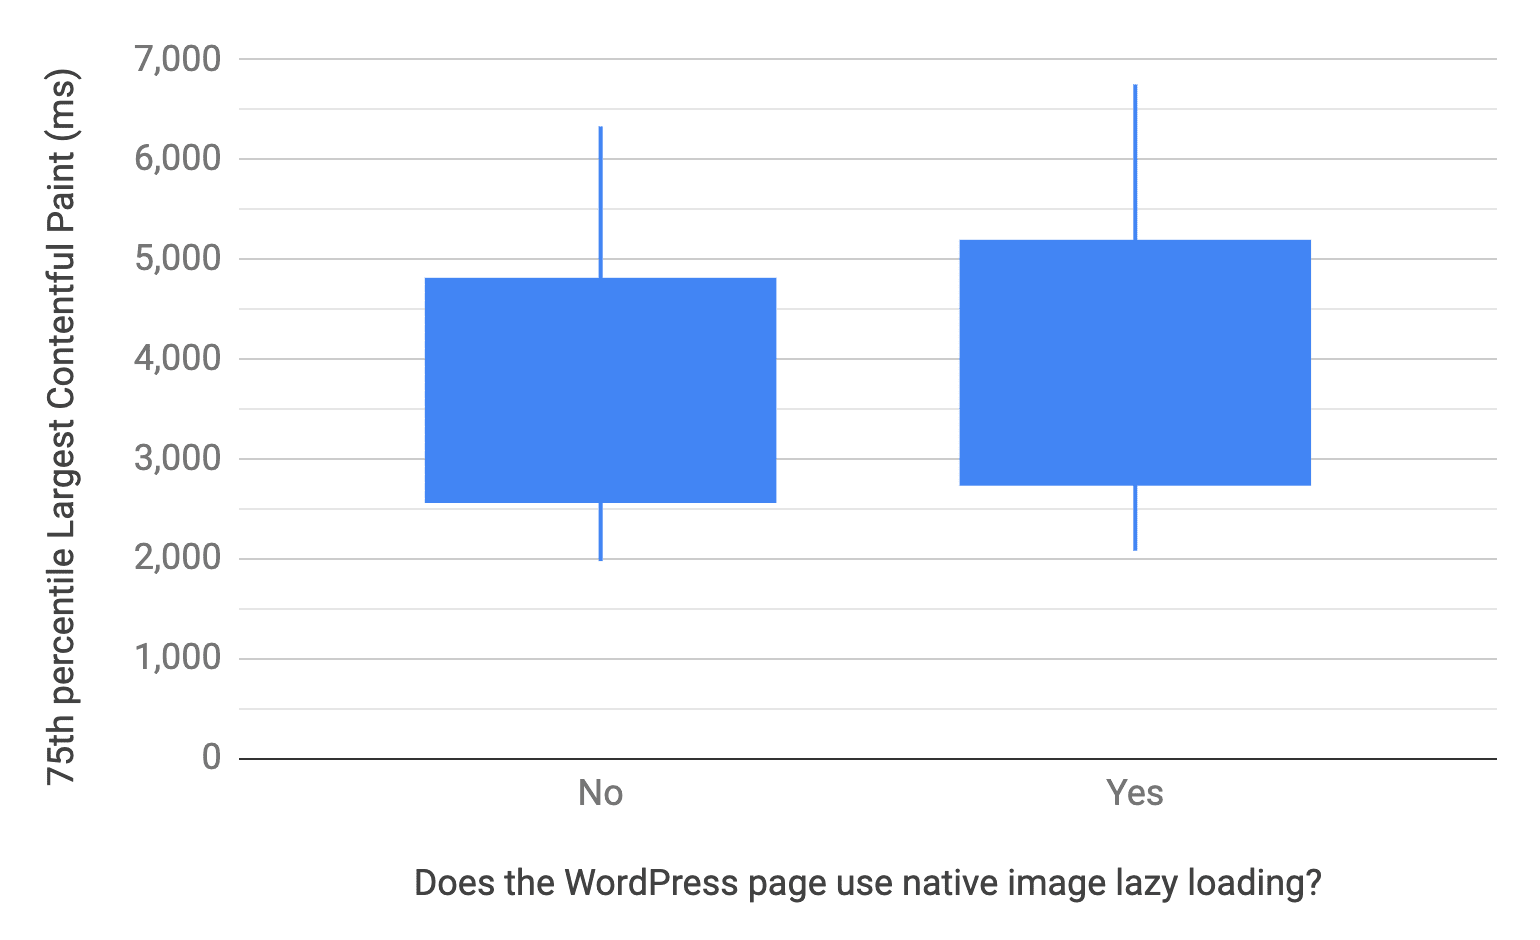 แผนภูมิ Box และ Whisker แสดงเปอร์เซ็นไทล์ที่ 10, 25, 75 และ 90 สำหรับหน้า WordPress ที่ใช้และไม่ได้ใช้การโหลดแบบ Lazy Loading เนทีฟ ในเชิงเปรียบเทียบ การกระจาย LCP ของหน้าที่ไม่ได้ใช้หน้าดังกล่าวจะเร็วกว่าการกระจาย LCP ซึ่งคล้ายกับแผนภูมิก่อนหน้า